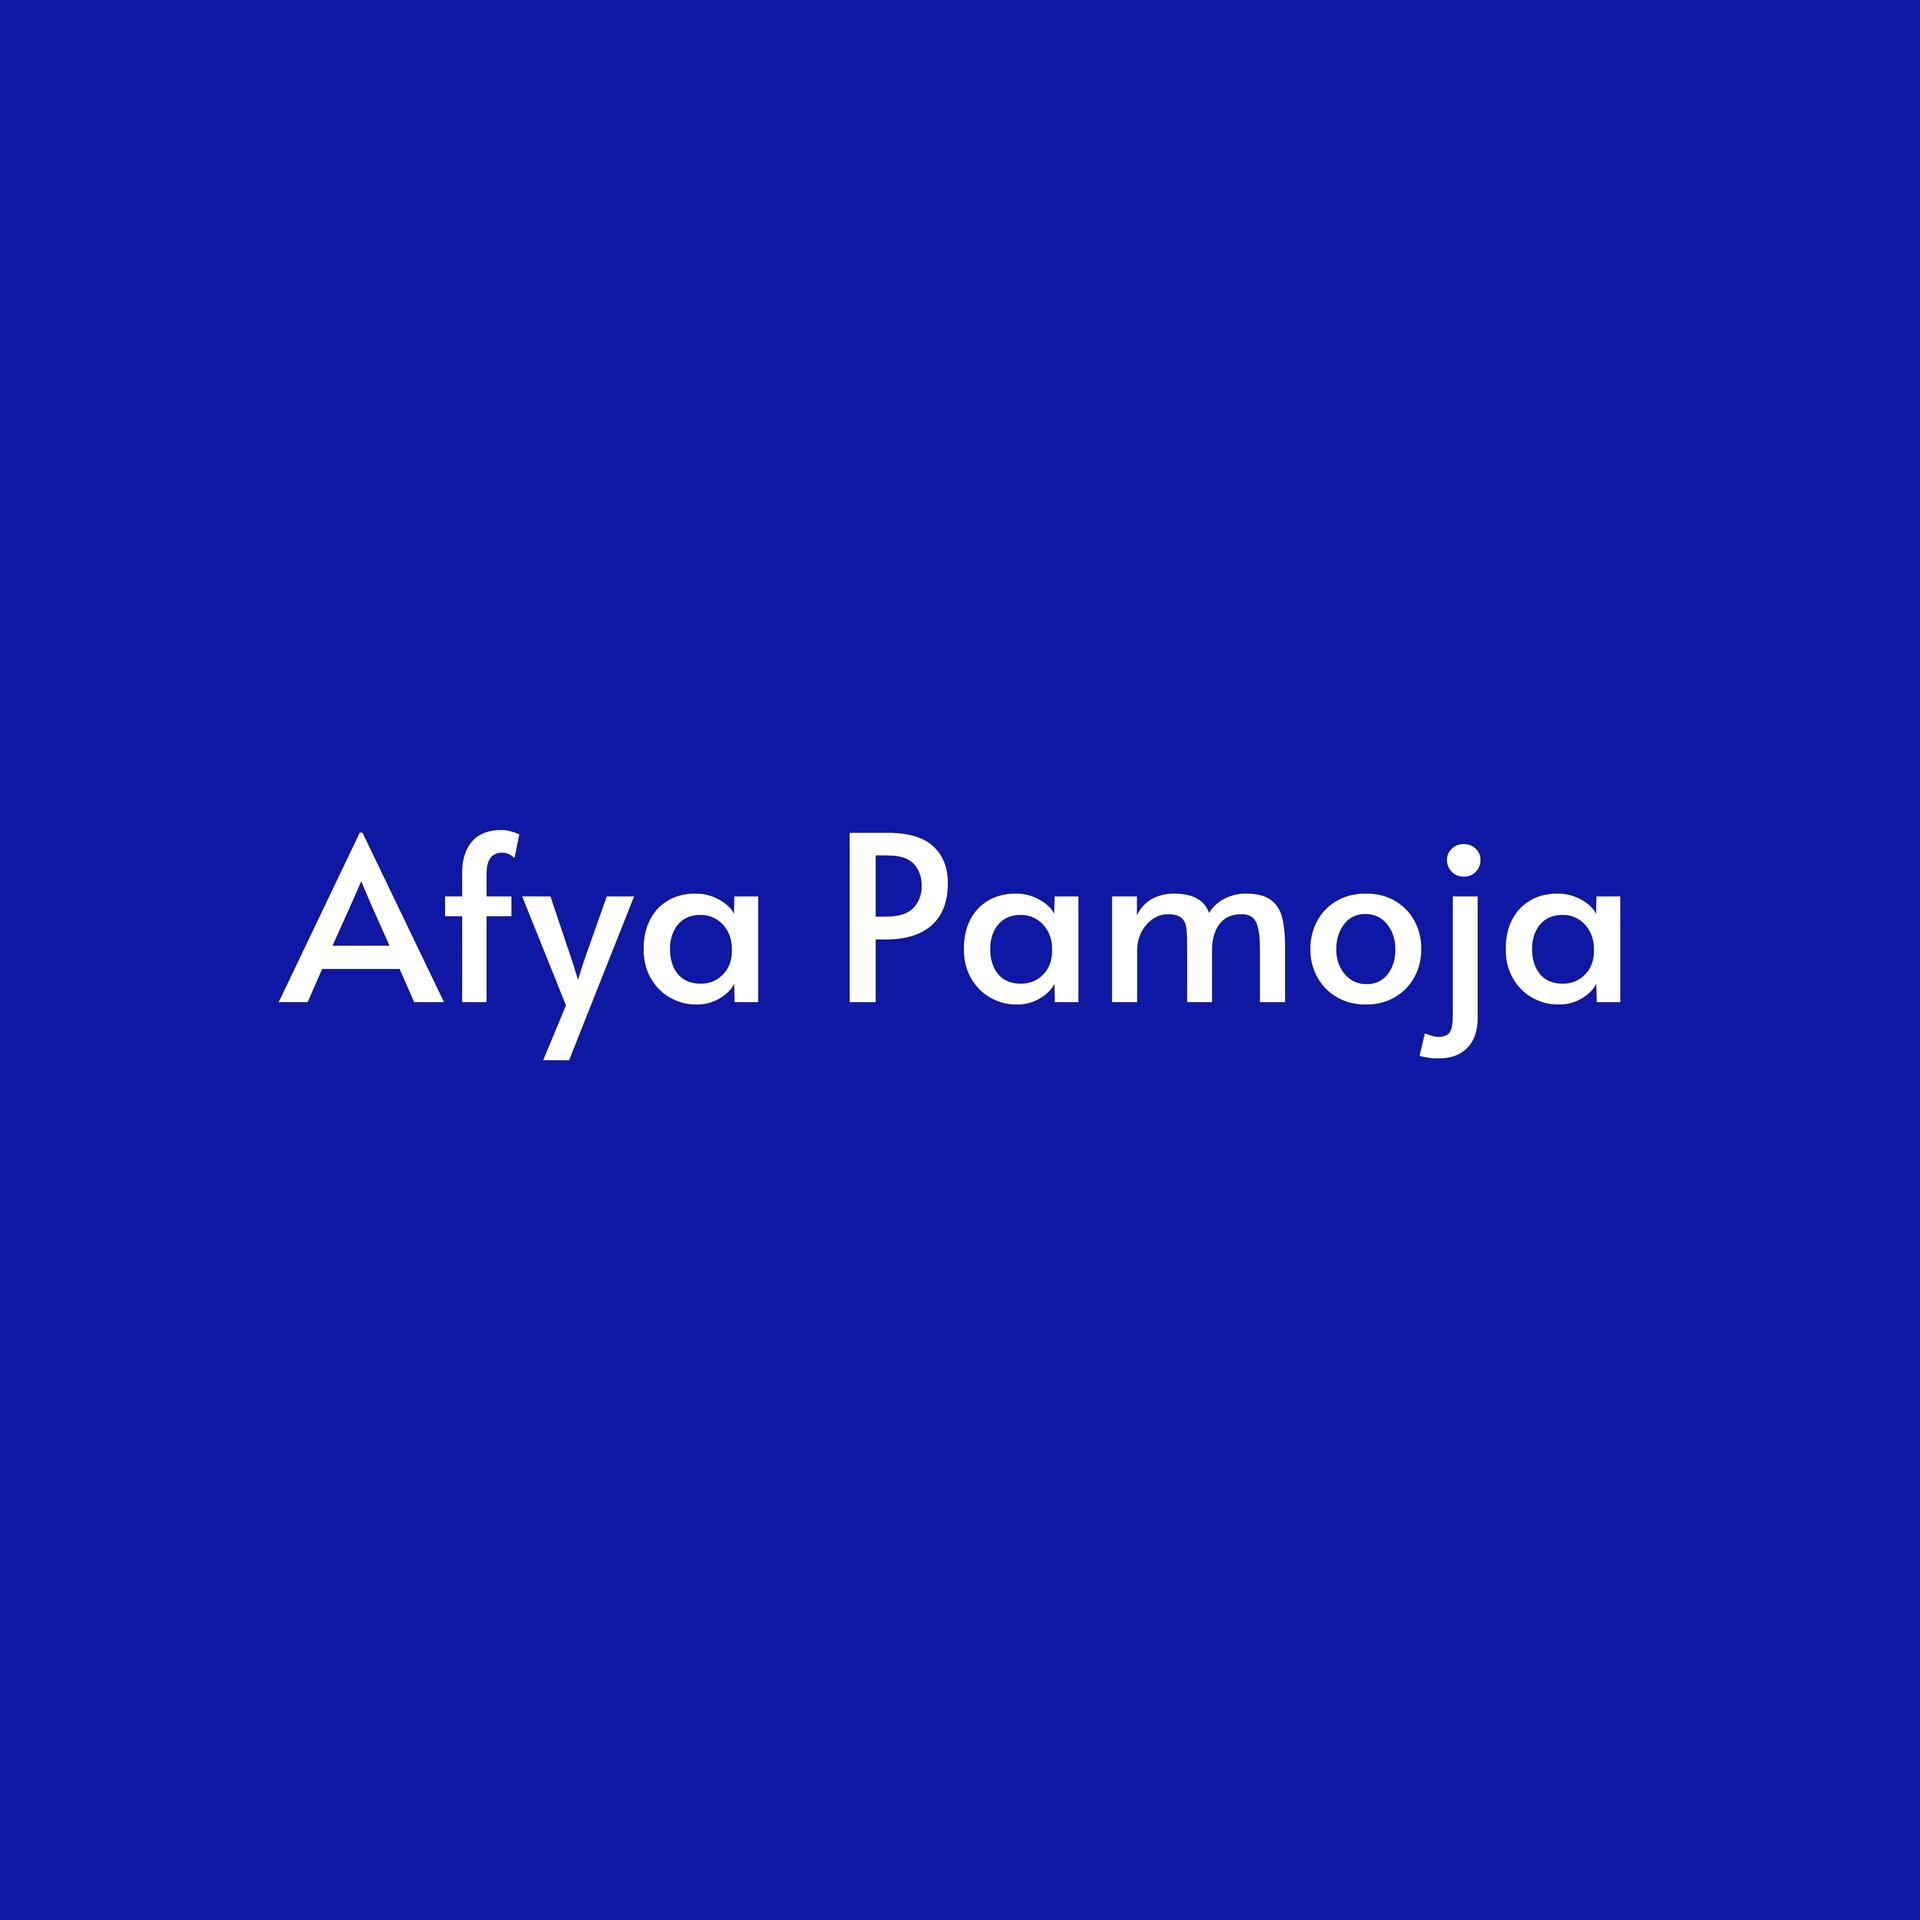 Afya Pamoja